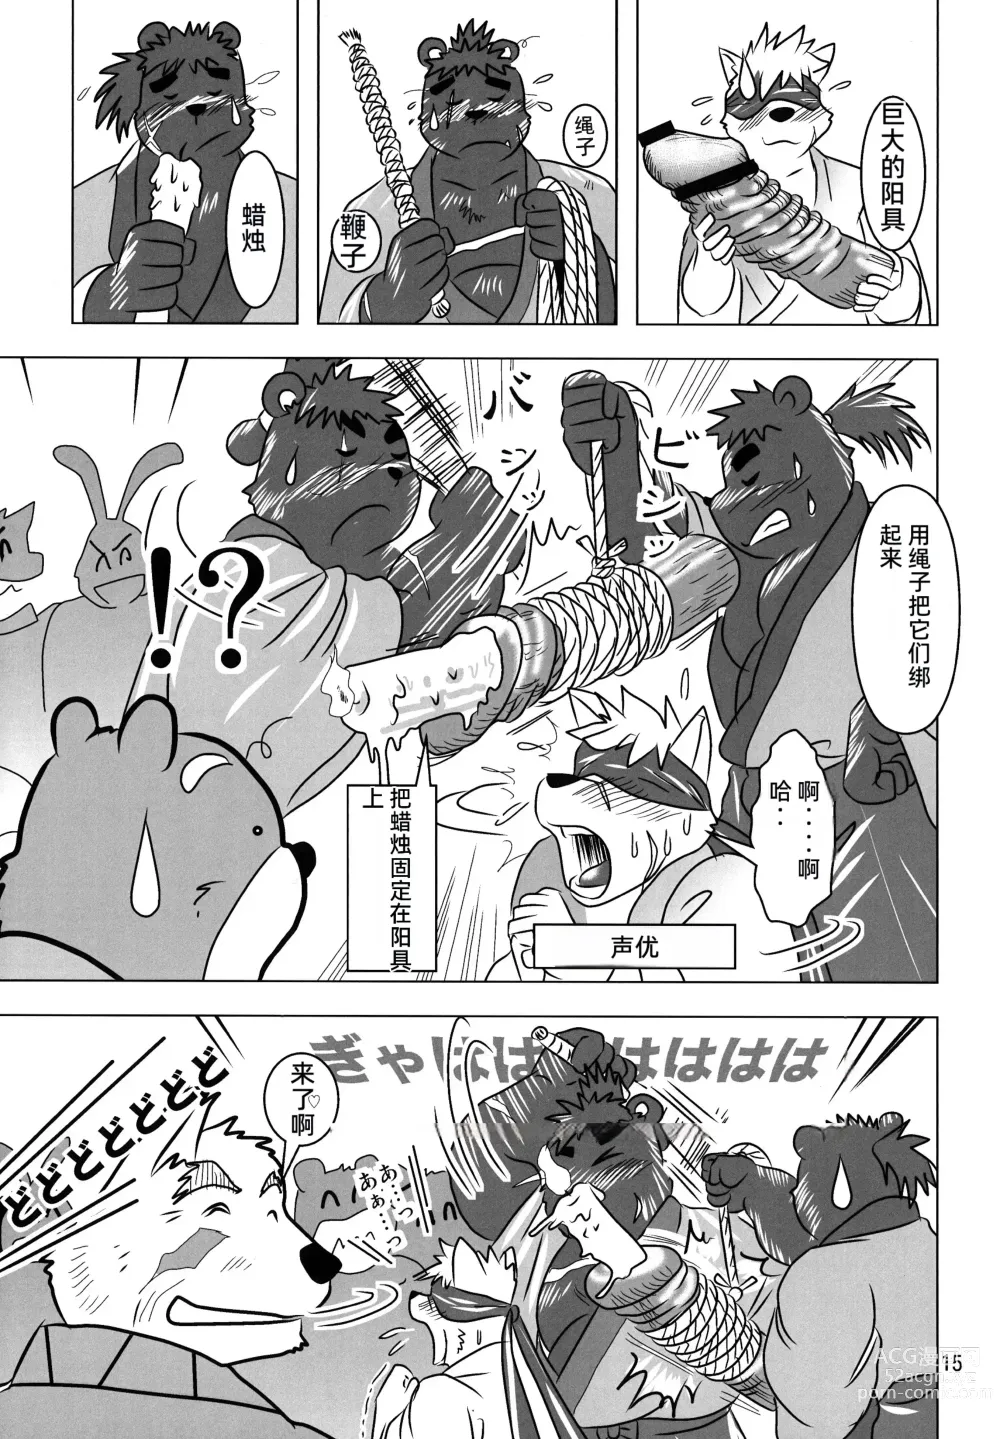 Page 14 of doujinshi Kemono no Roukaku - Utage